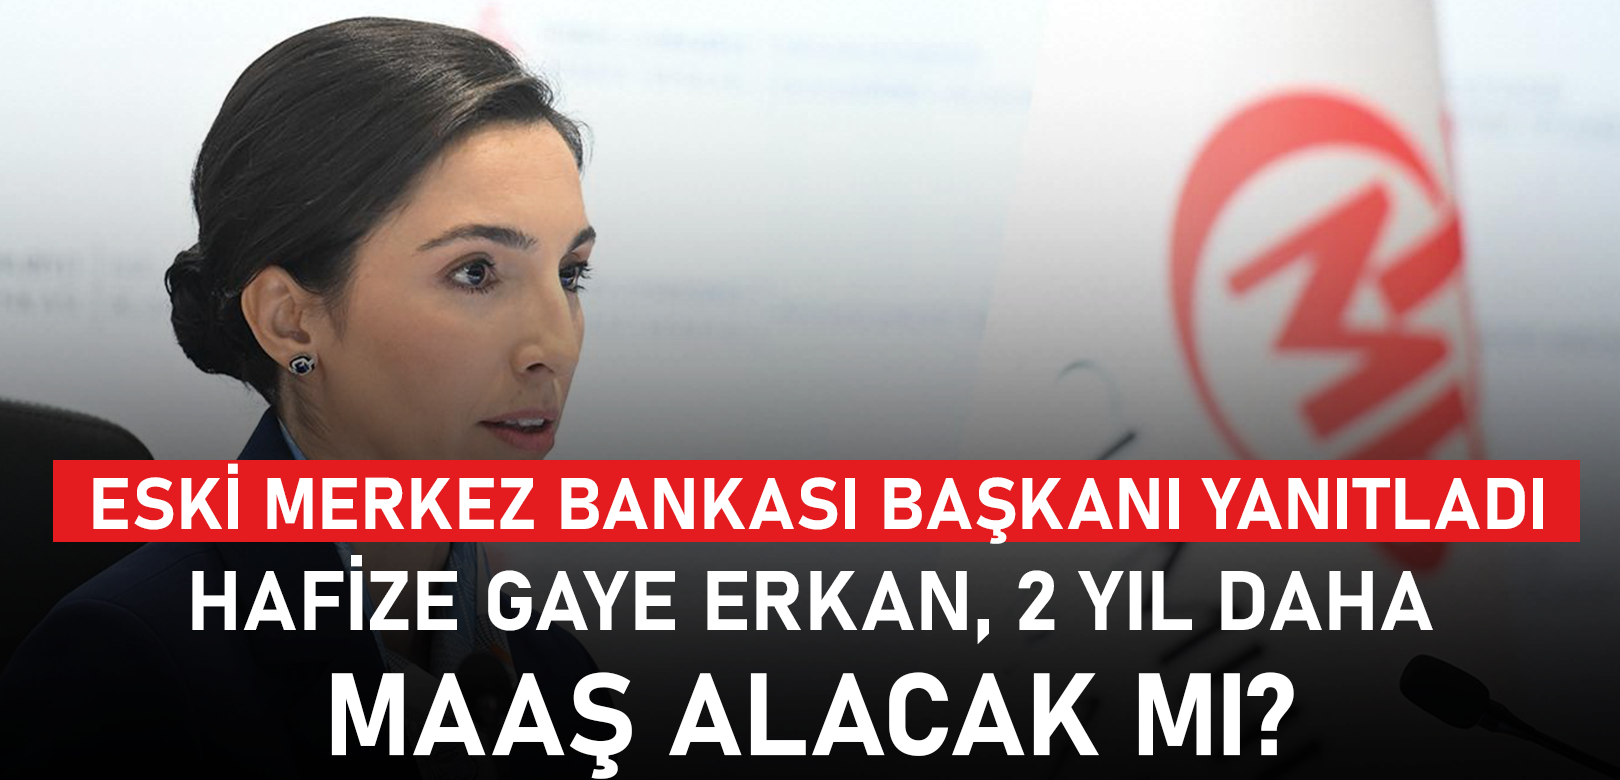 Hafize Gaye Erkan 2 yıl daha maaş alacak mı? Eski Merkez Bankası Başkanı yanıtladı